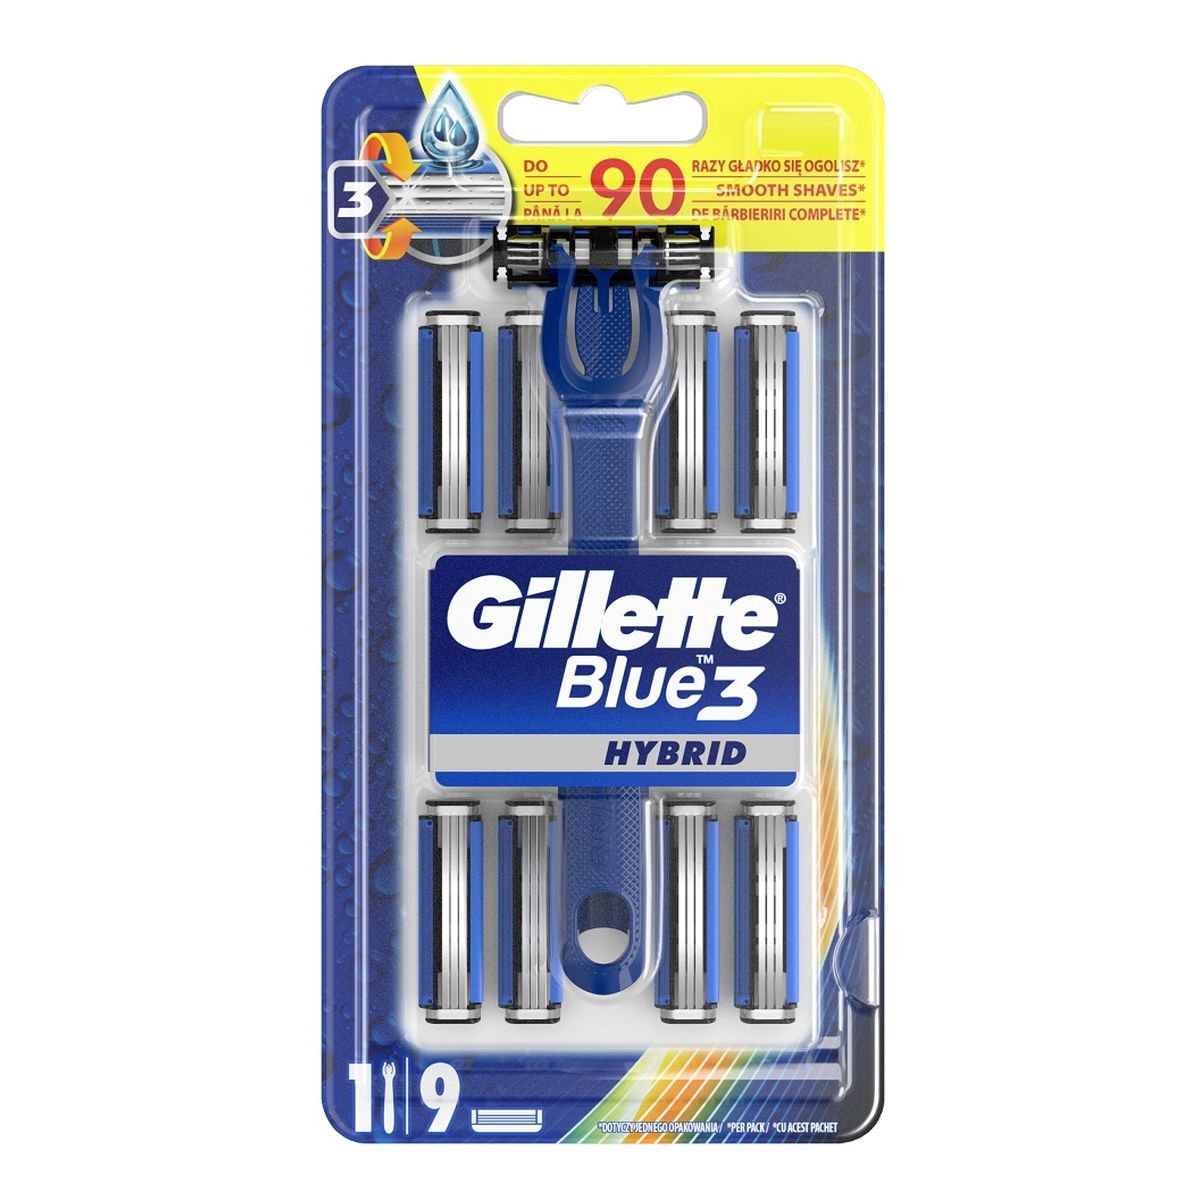 Gillette Blue 3 hybrid maszynka do golenia + 9 wymiennych kładów